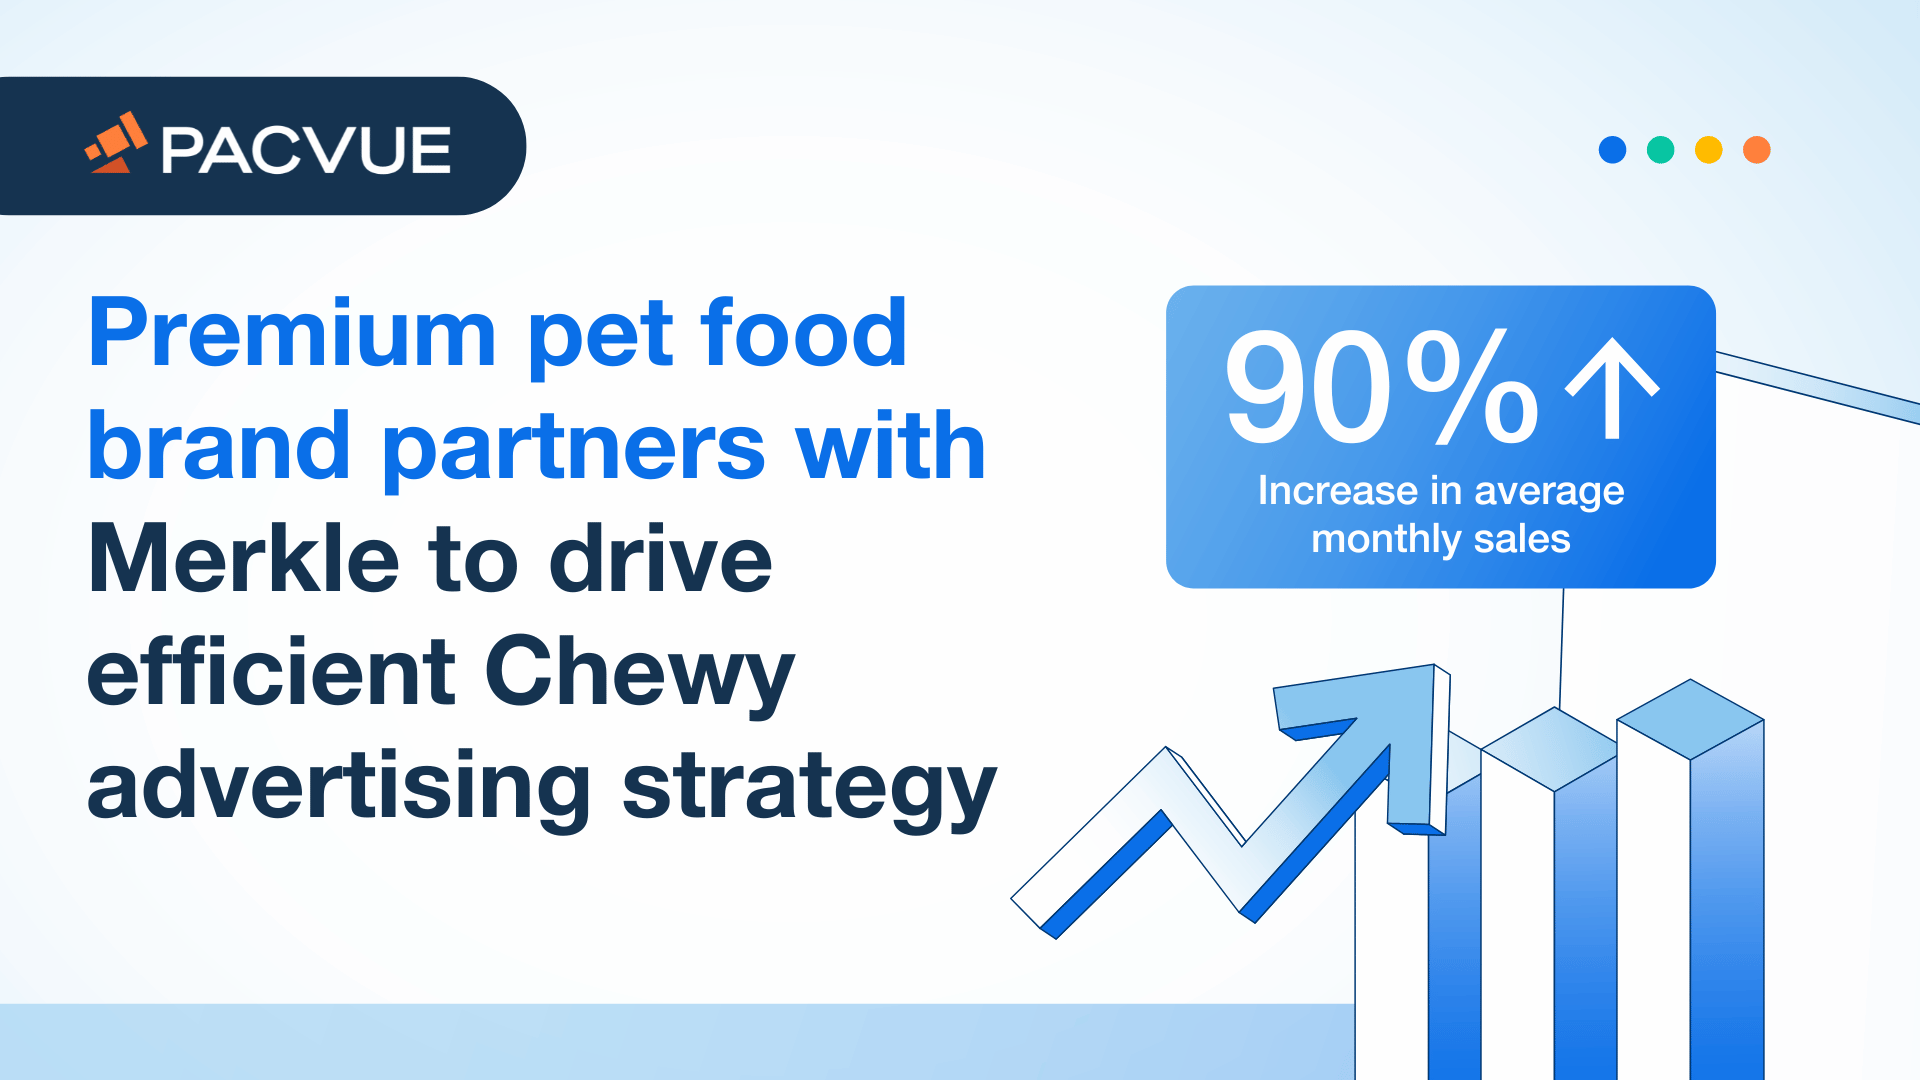 Una marca premium de comida para mascotas se asocia con Merkle para impulsar una estrategia publicitaria eficaz en Chewy